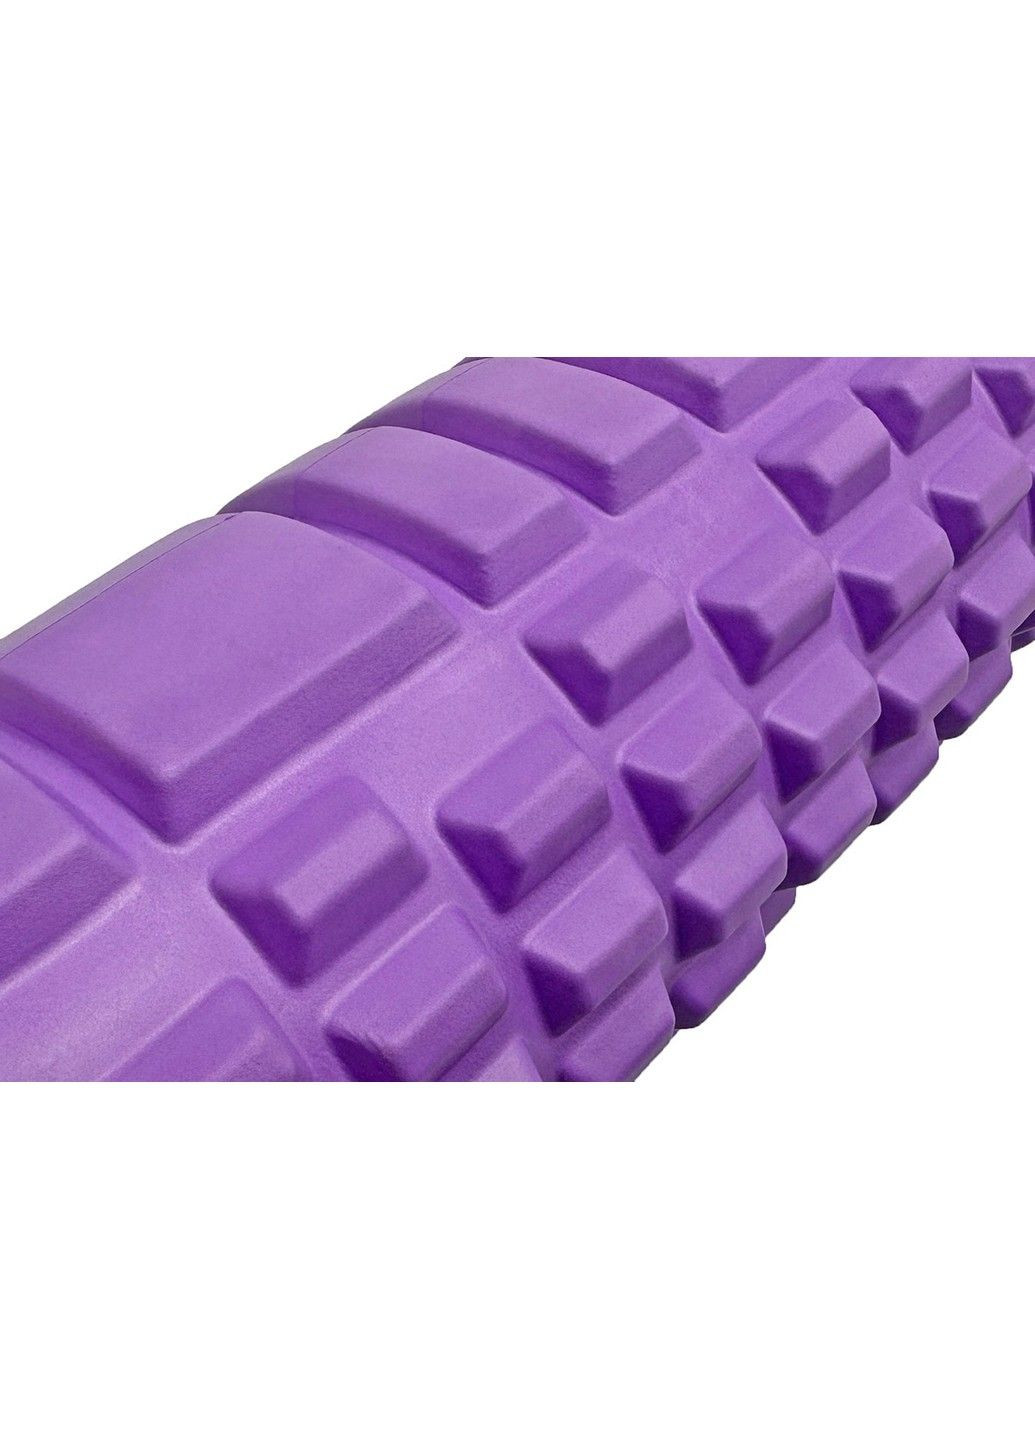 Масажний ролер Grid Roller 60 см v.3.1 EF-2037-V Violet EasyFit (290255561)